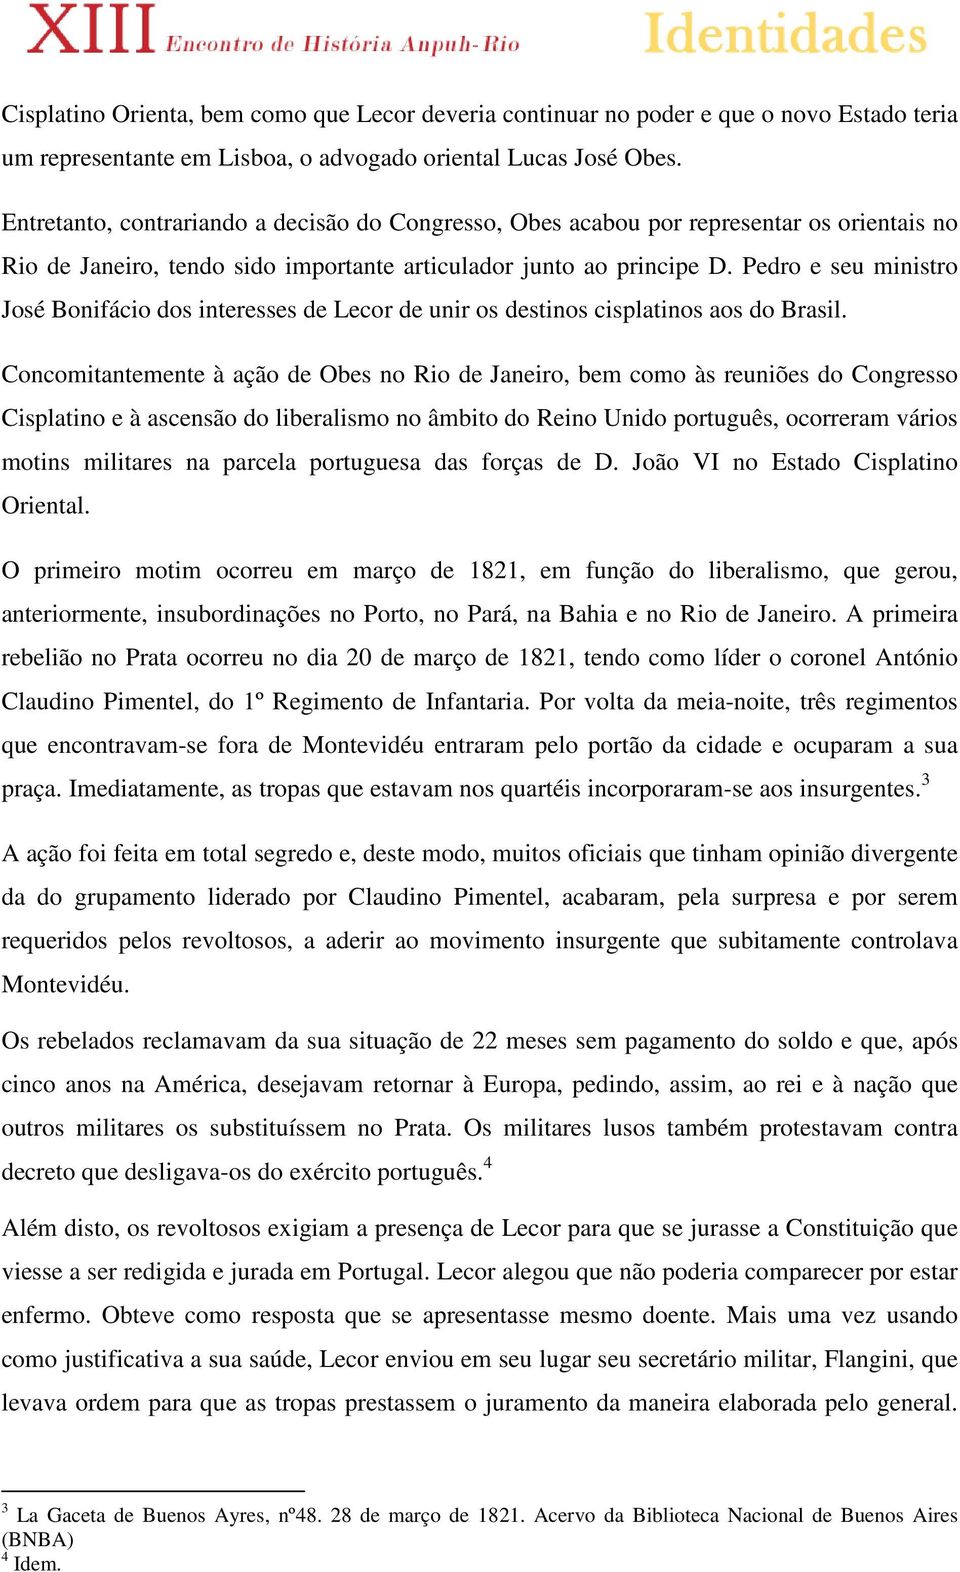 Pedro e seu ministro José Bonifácio dos interesses de Lecor de unir os destinos cisplatinos aos do Brasil.